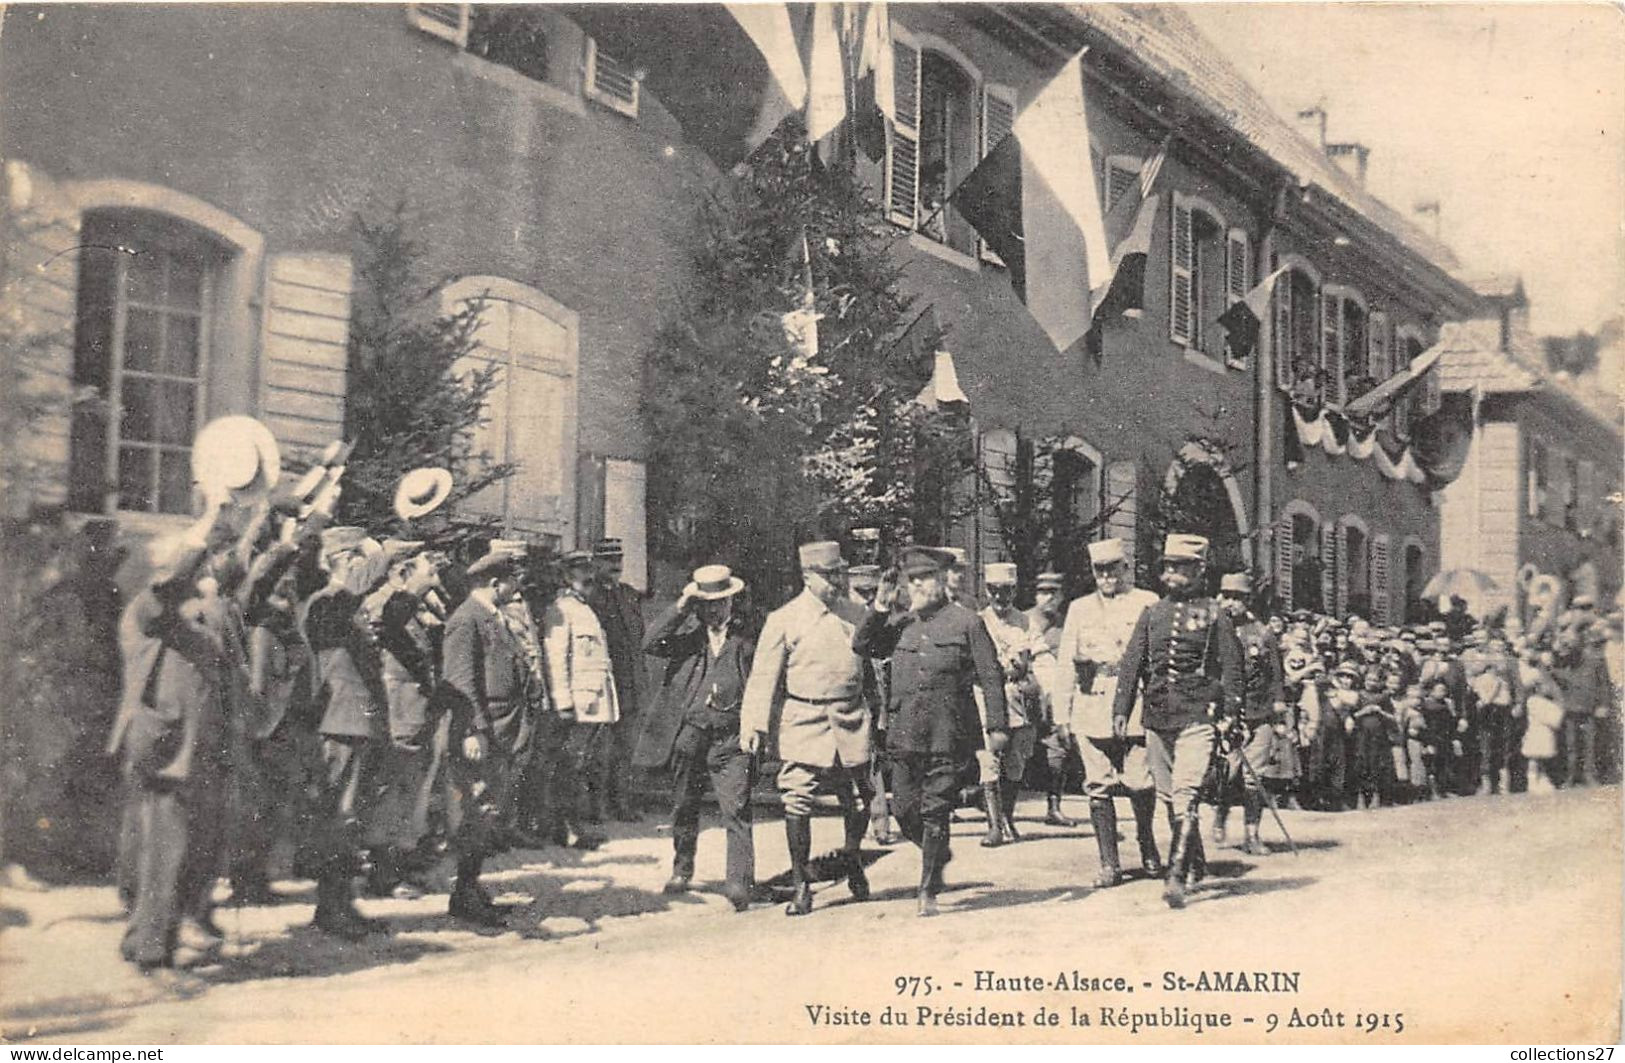 68-SAINT-AMARIN- VISITE DU PRESIDENT DE LA REPUBLIQUE 9 AOUT 1915 - Saint Amarin